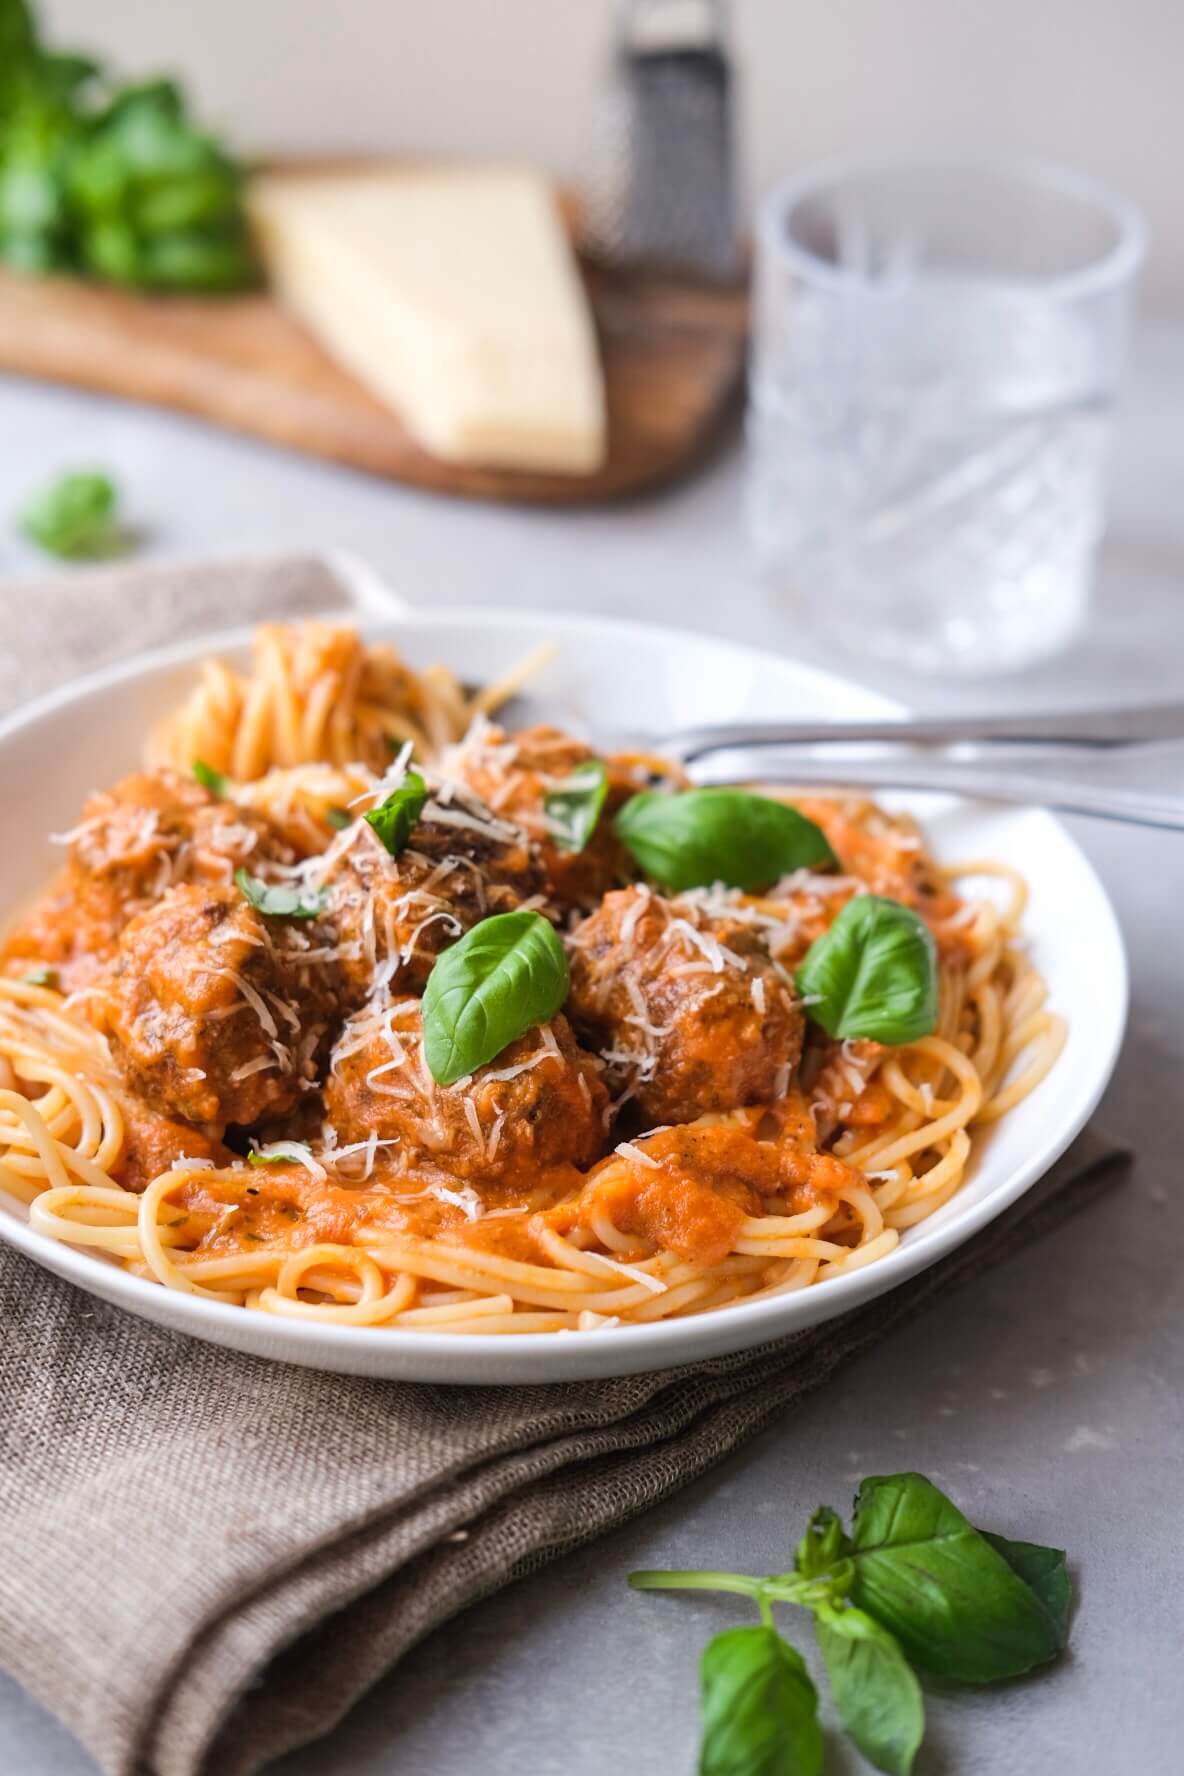 Spaghetti med kødboller i tomatsauce